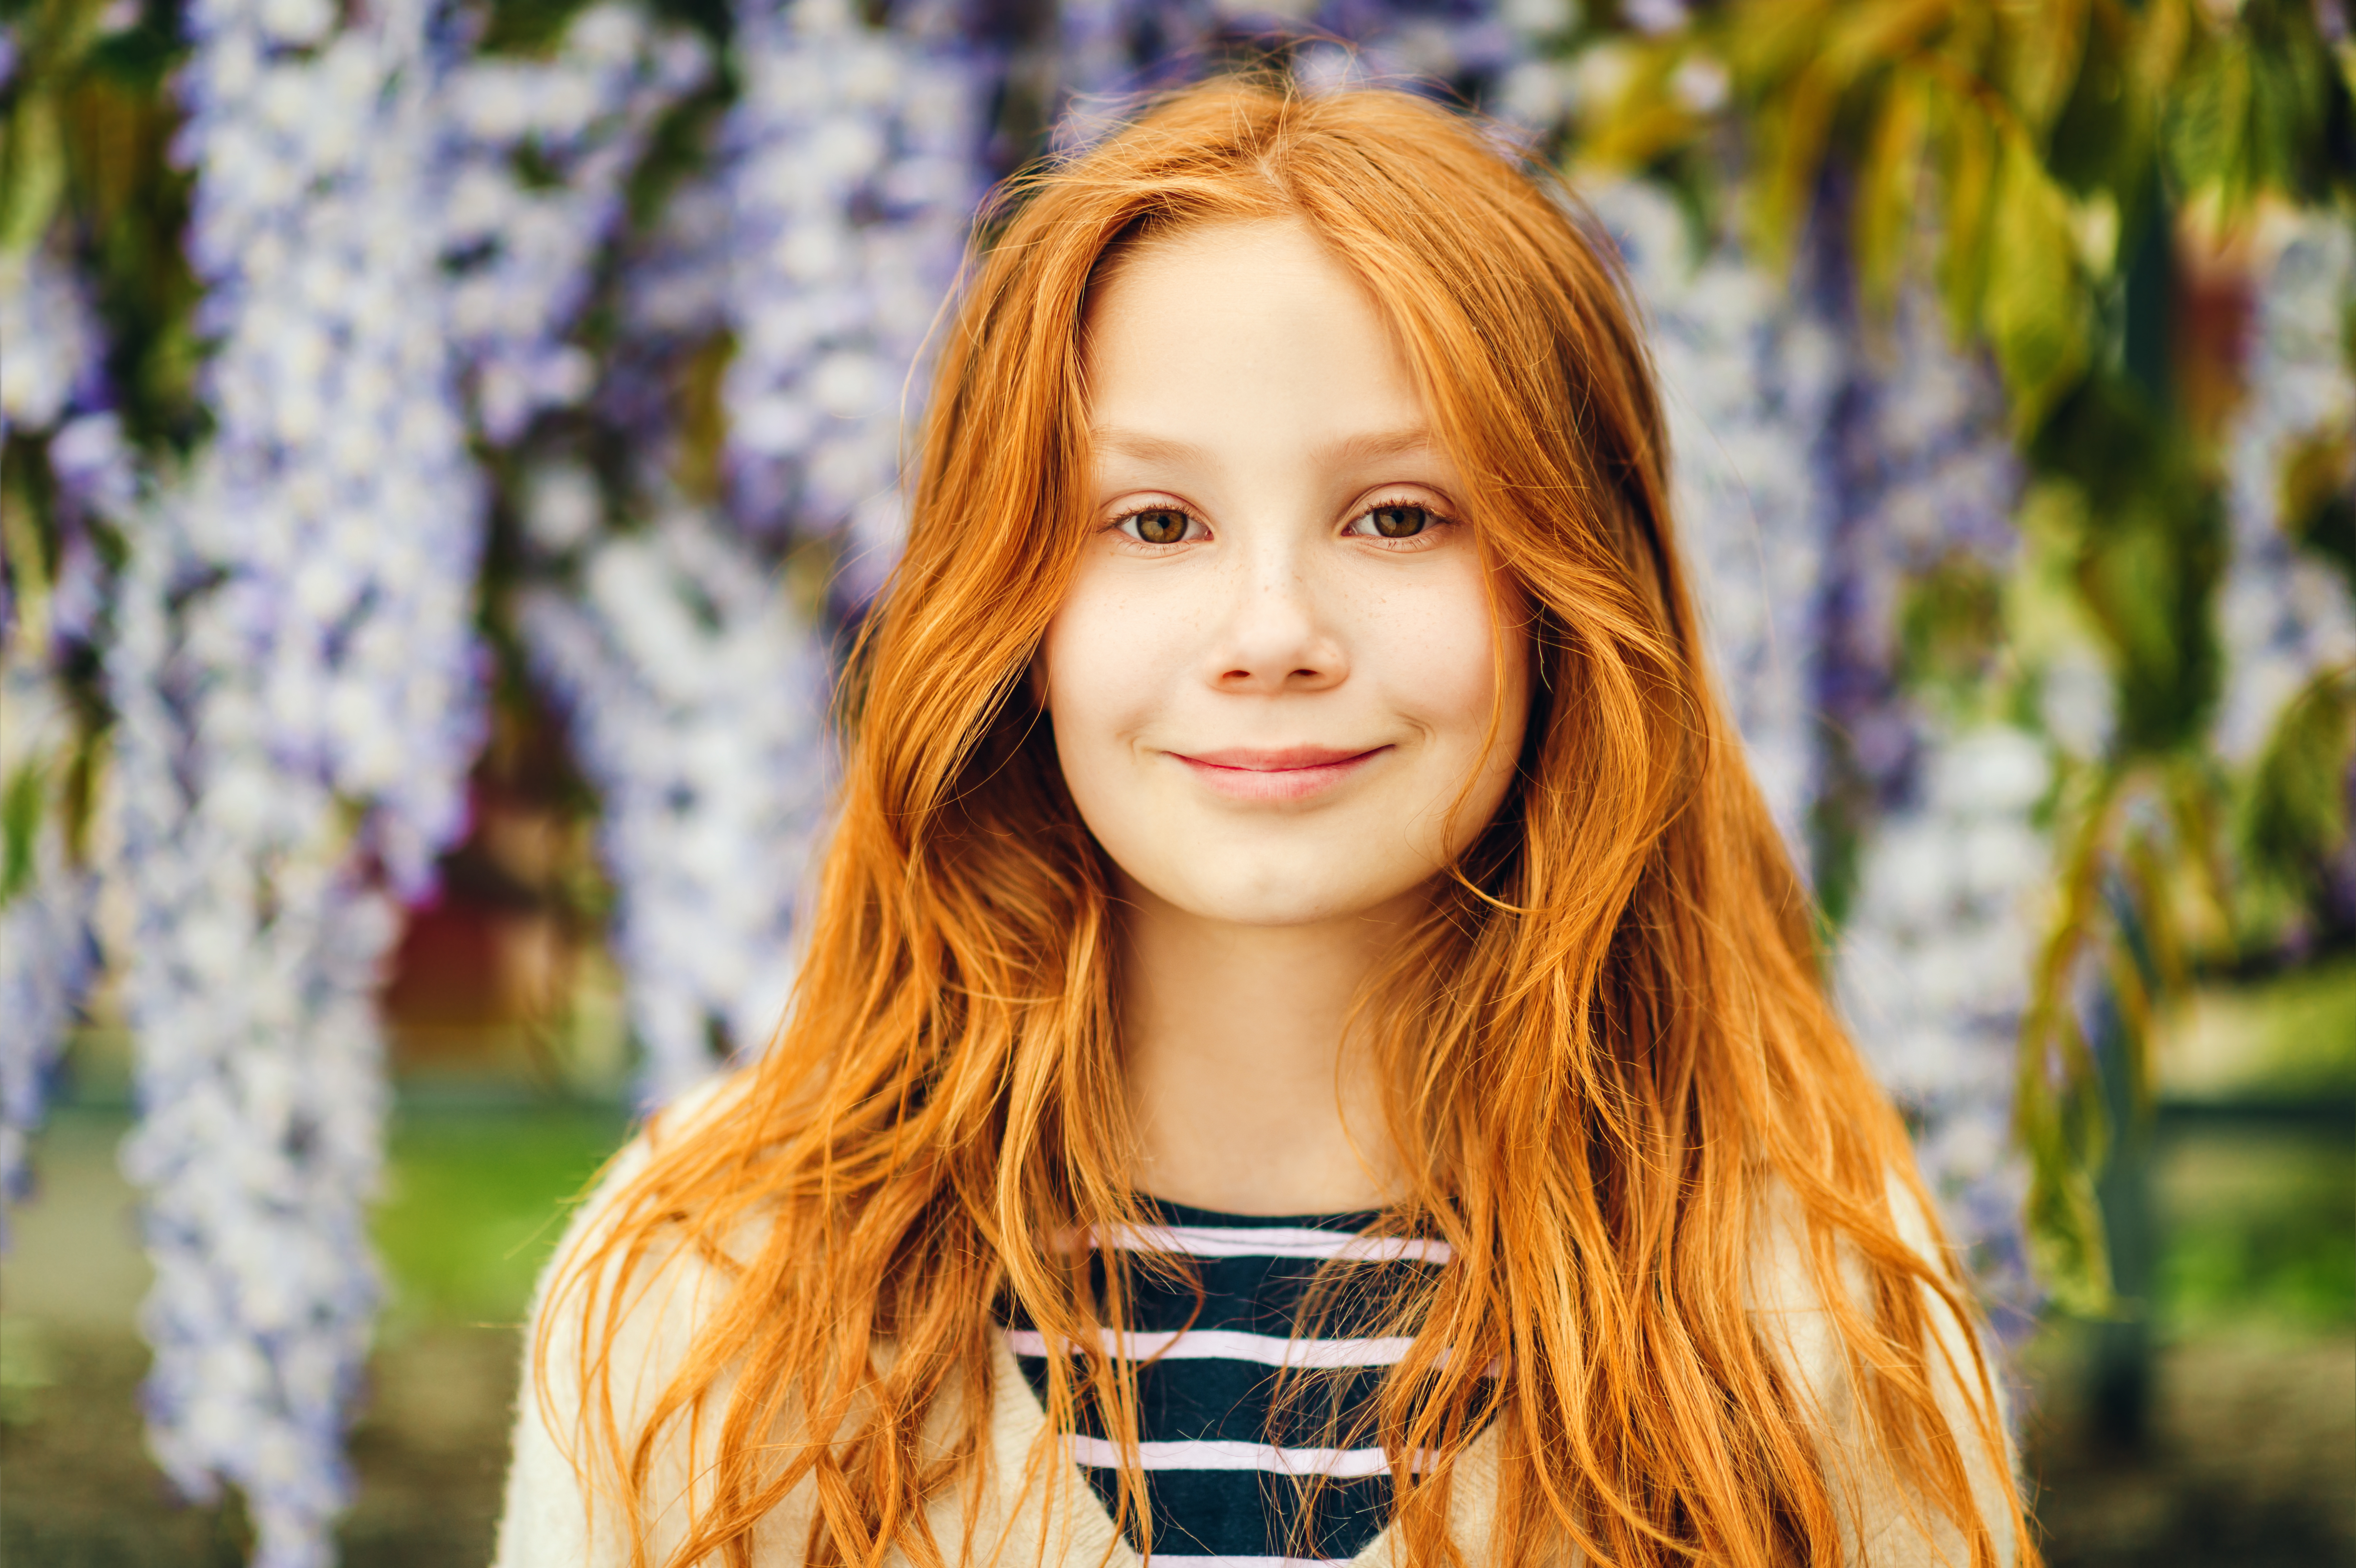 Une jeune fille souriant devant une glycine | Source : Shutterstock